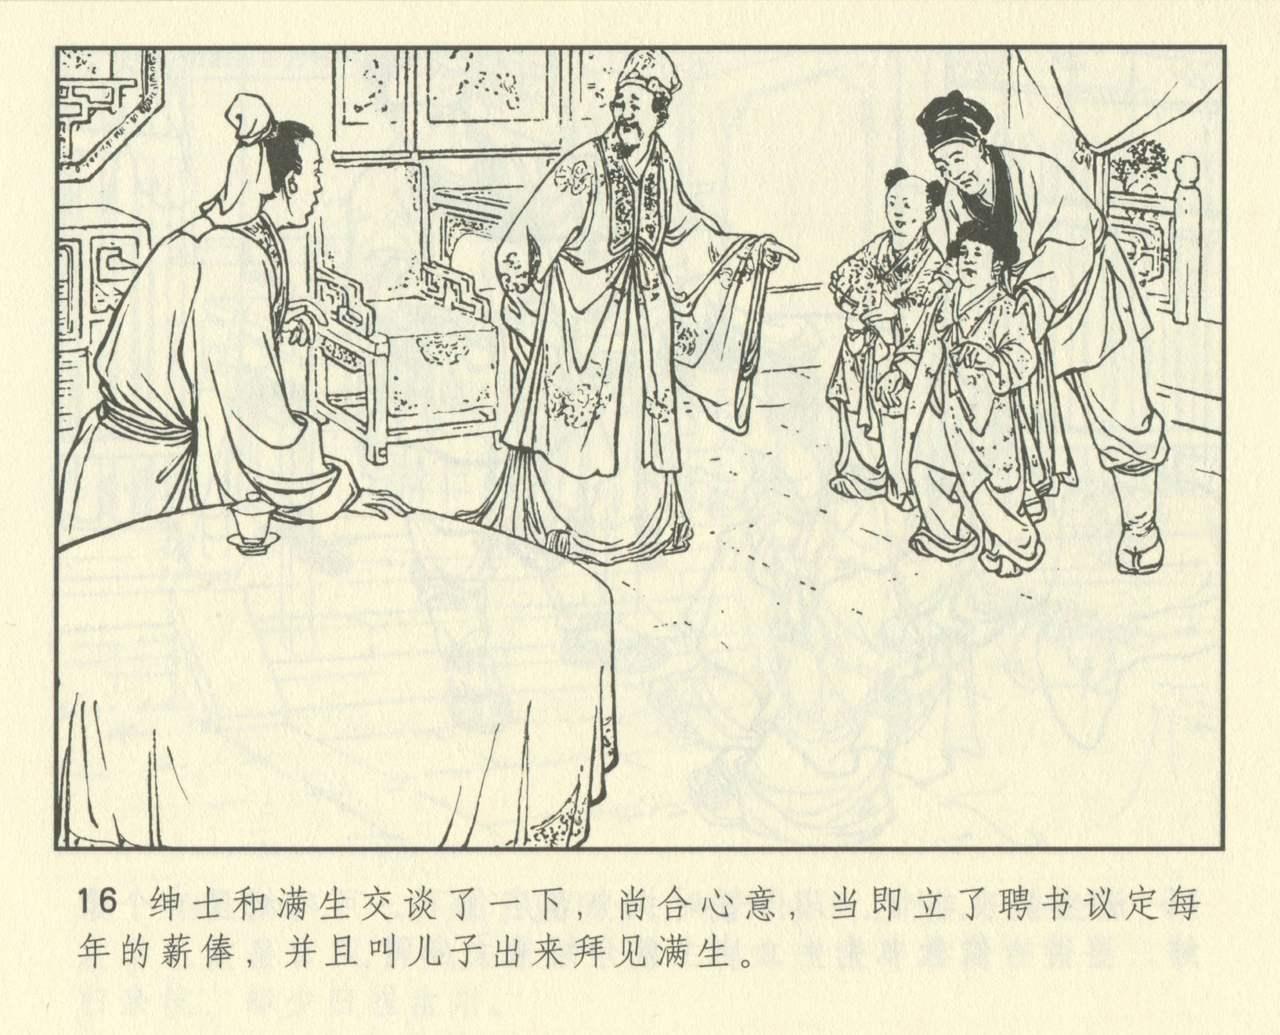 聊斋志异 张玮等绘 天津人民美术出版社 卷二十一 ~ 三十 427